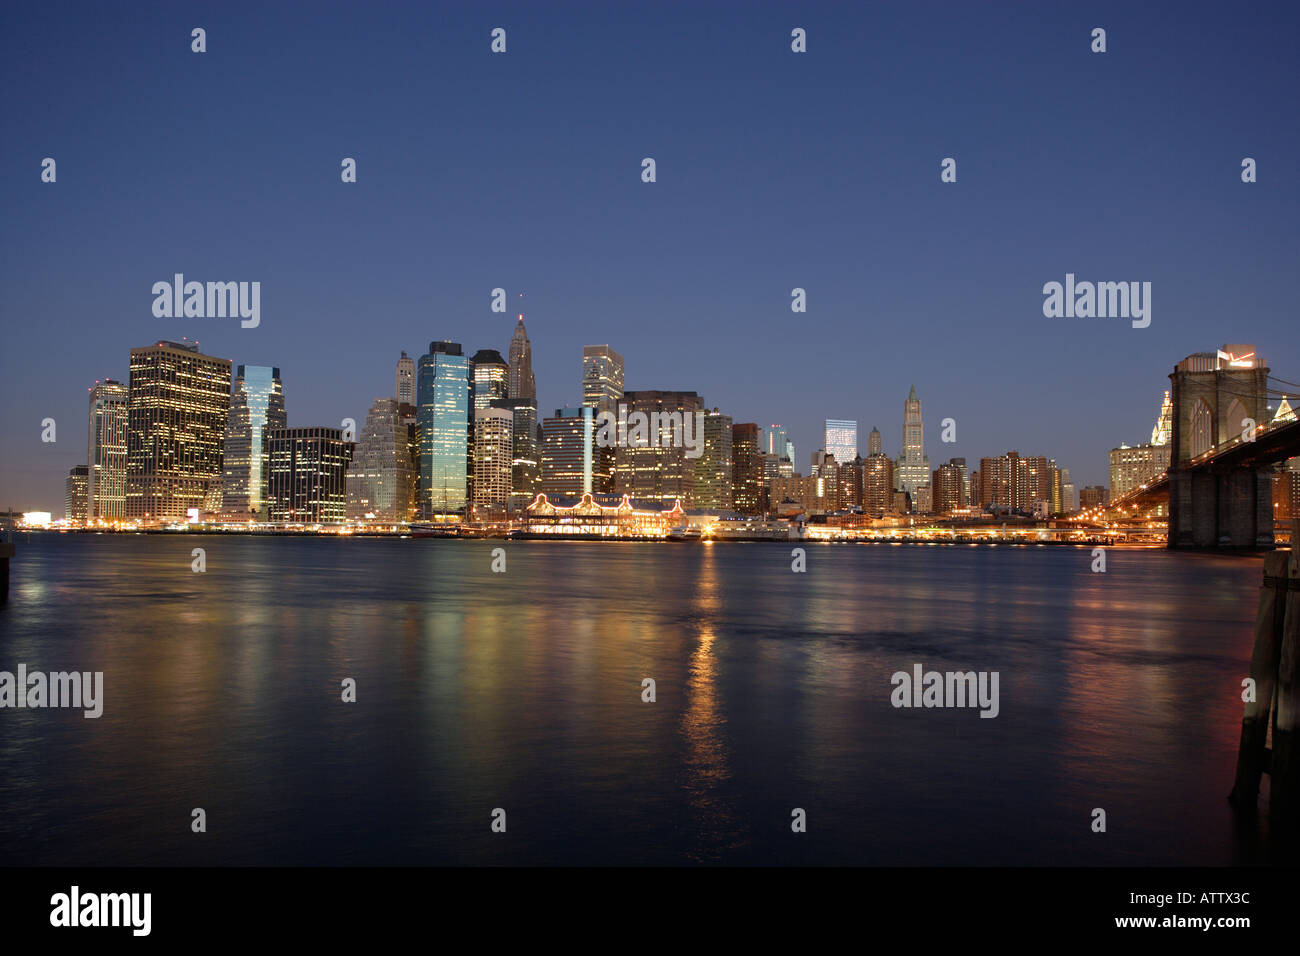 Manhattan New York city NY USA skyline at night Stock Photo